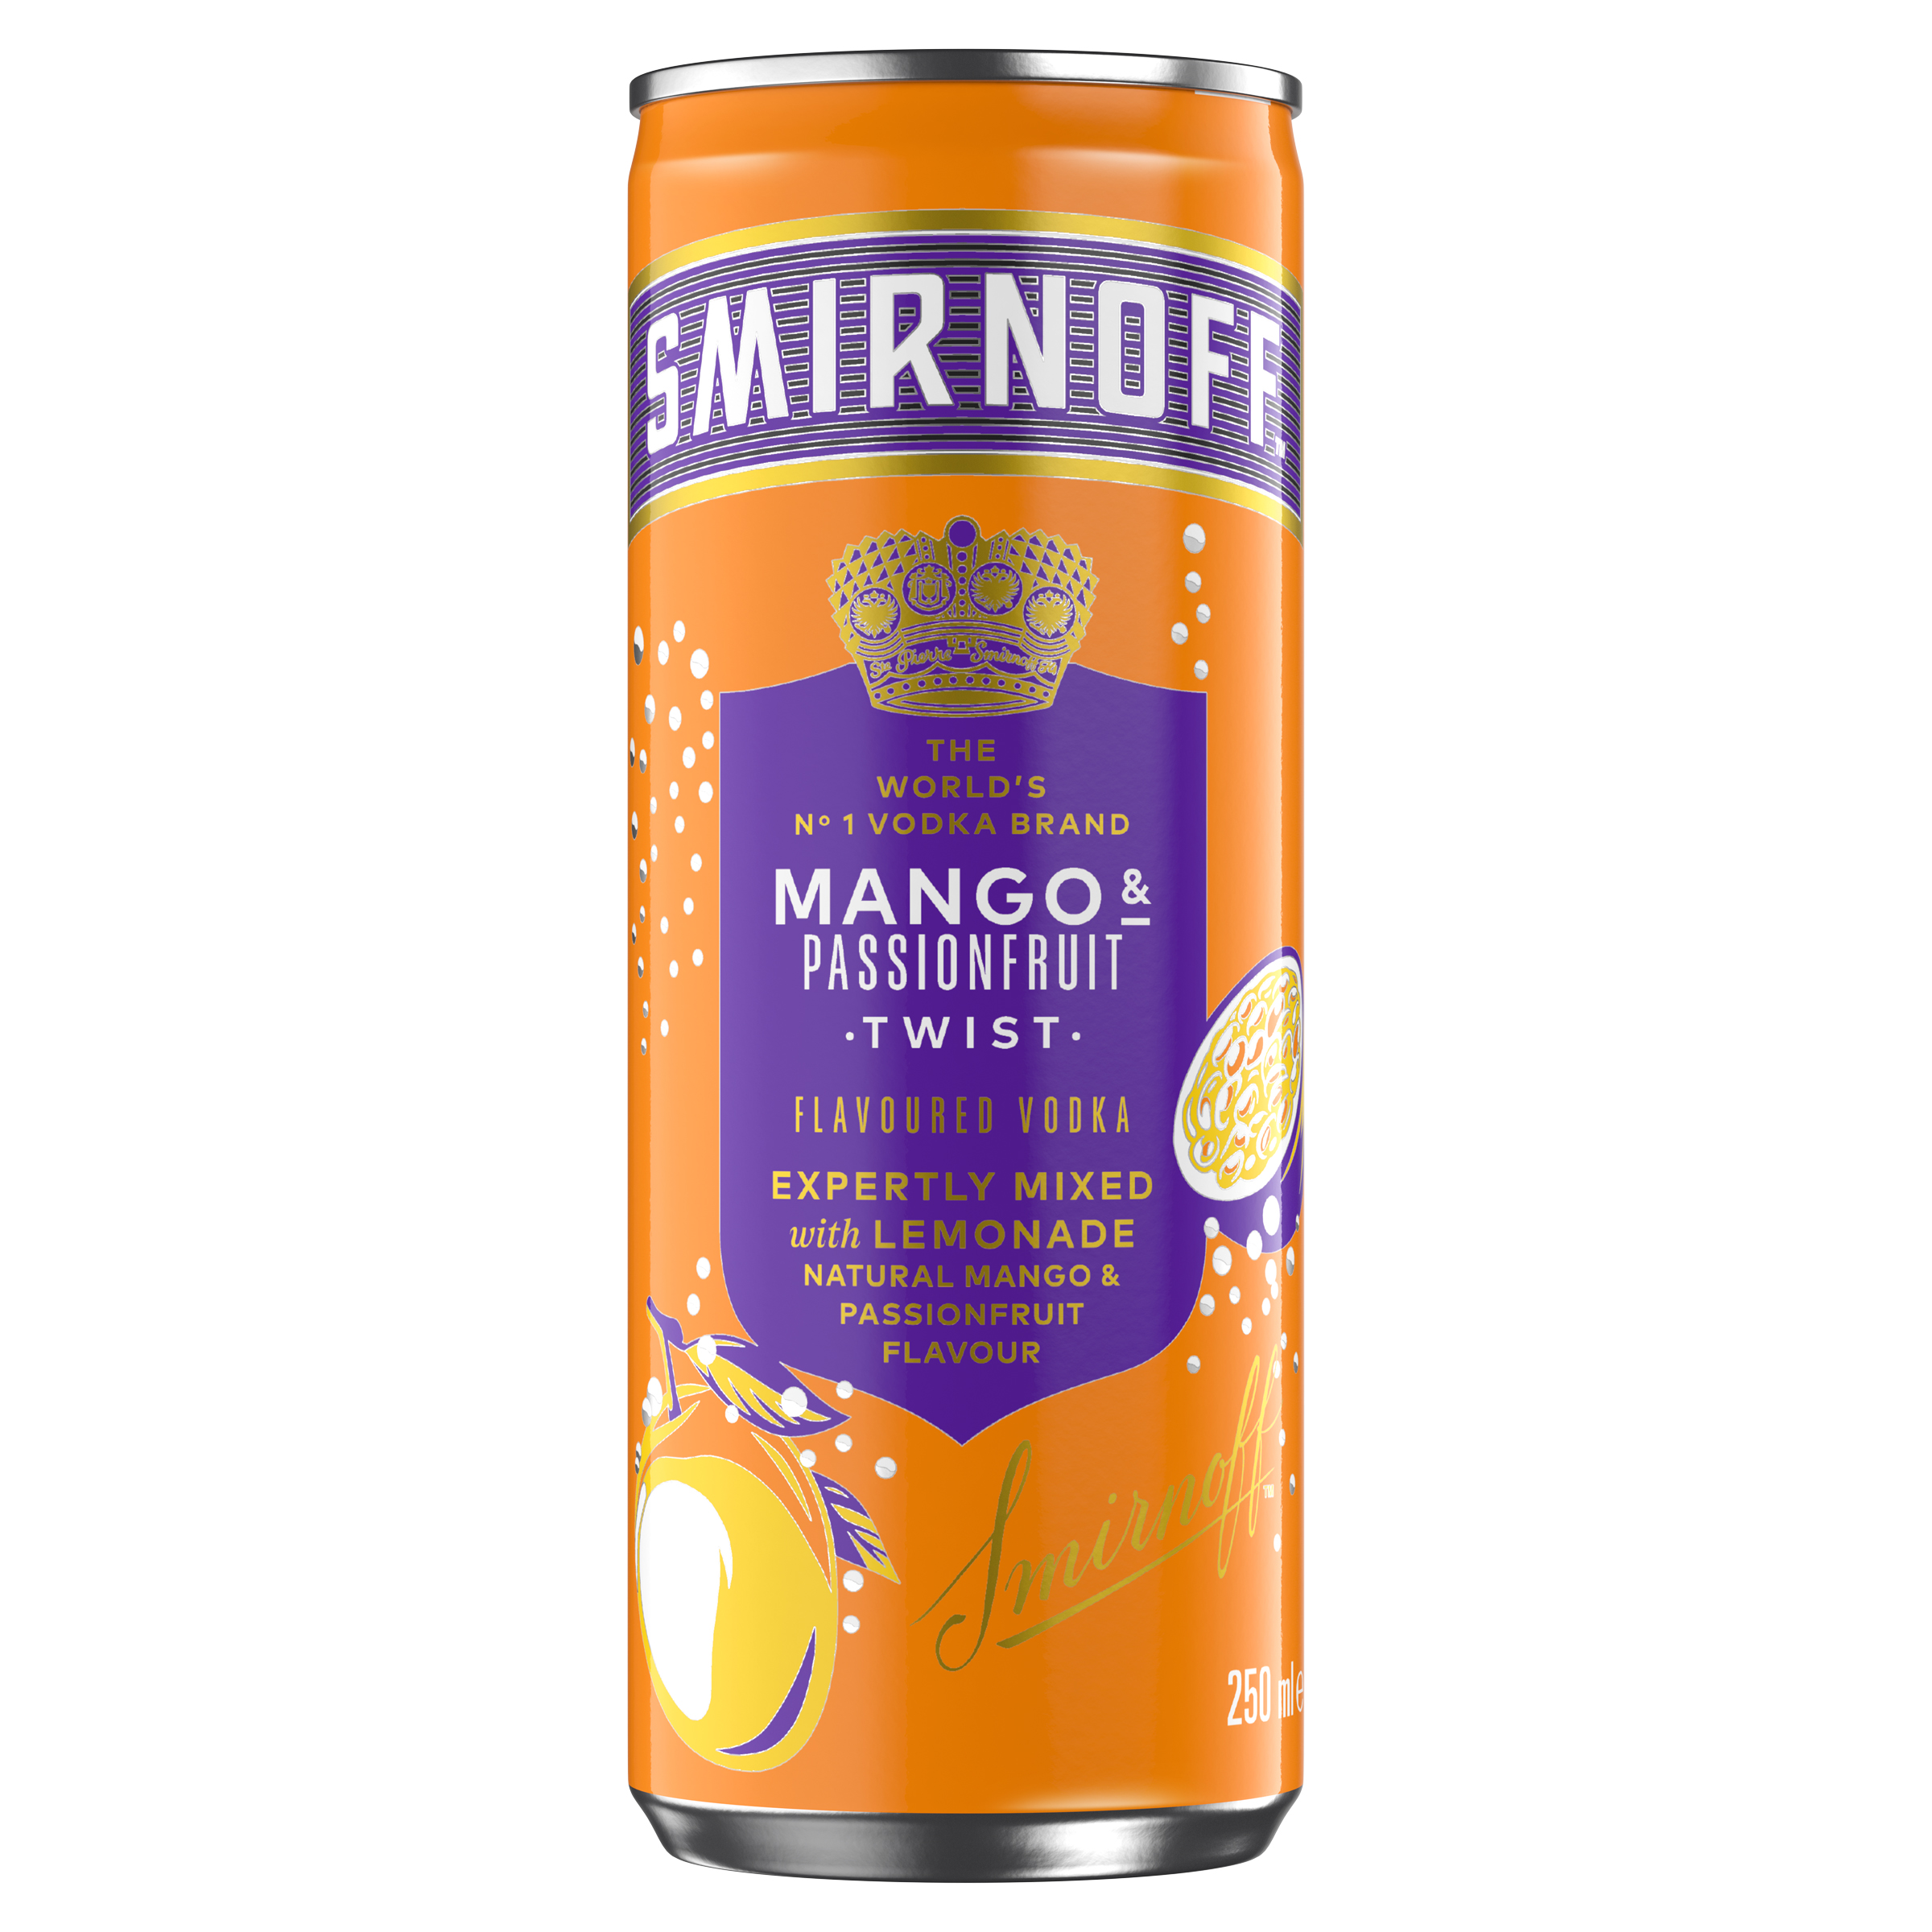 Smirnoff adds ‘Mango & Passionfruit Twist’ RTD to its flavoured-vodka portfolio